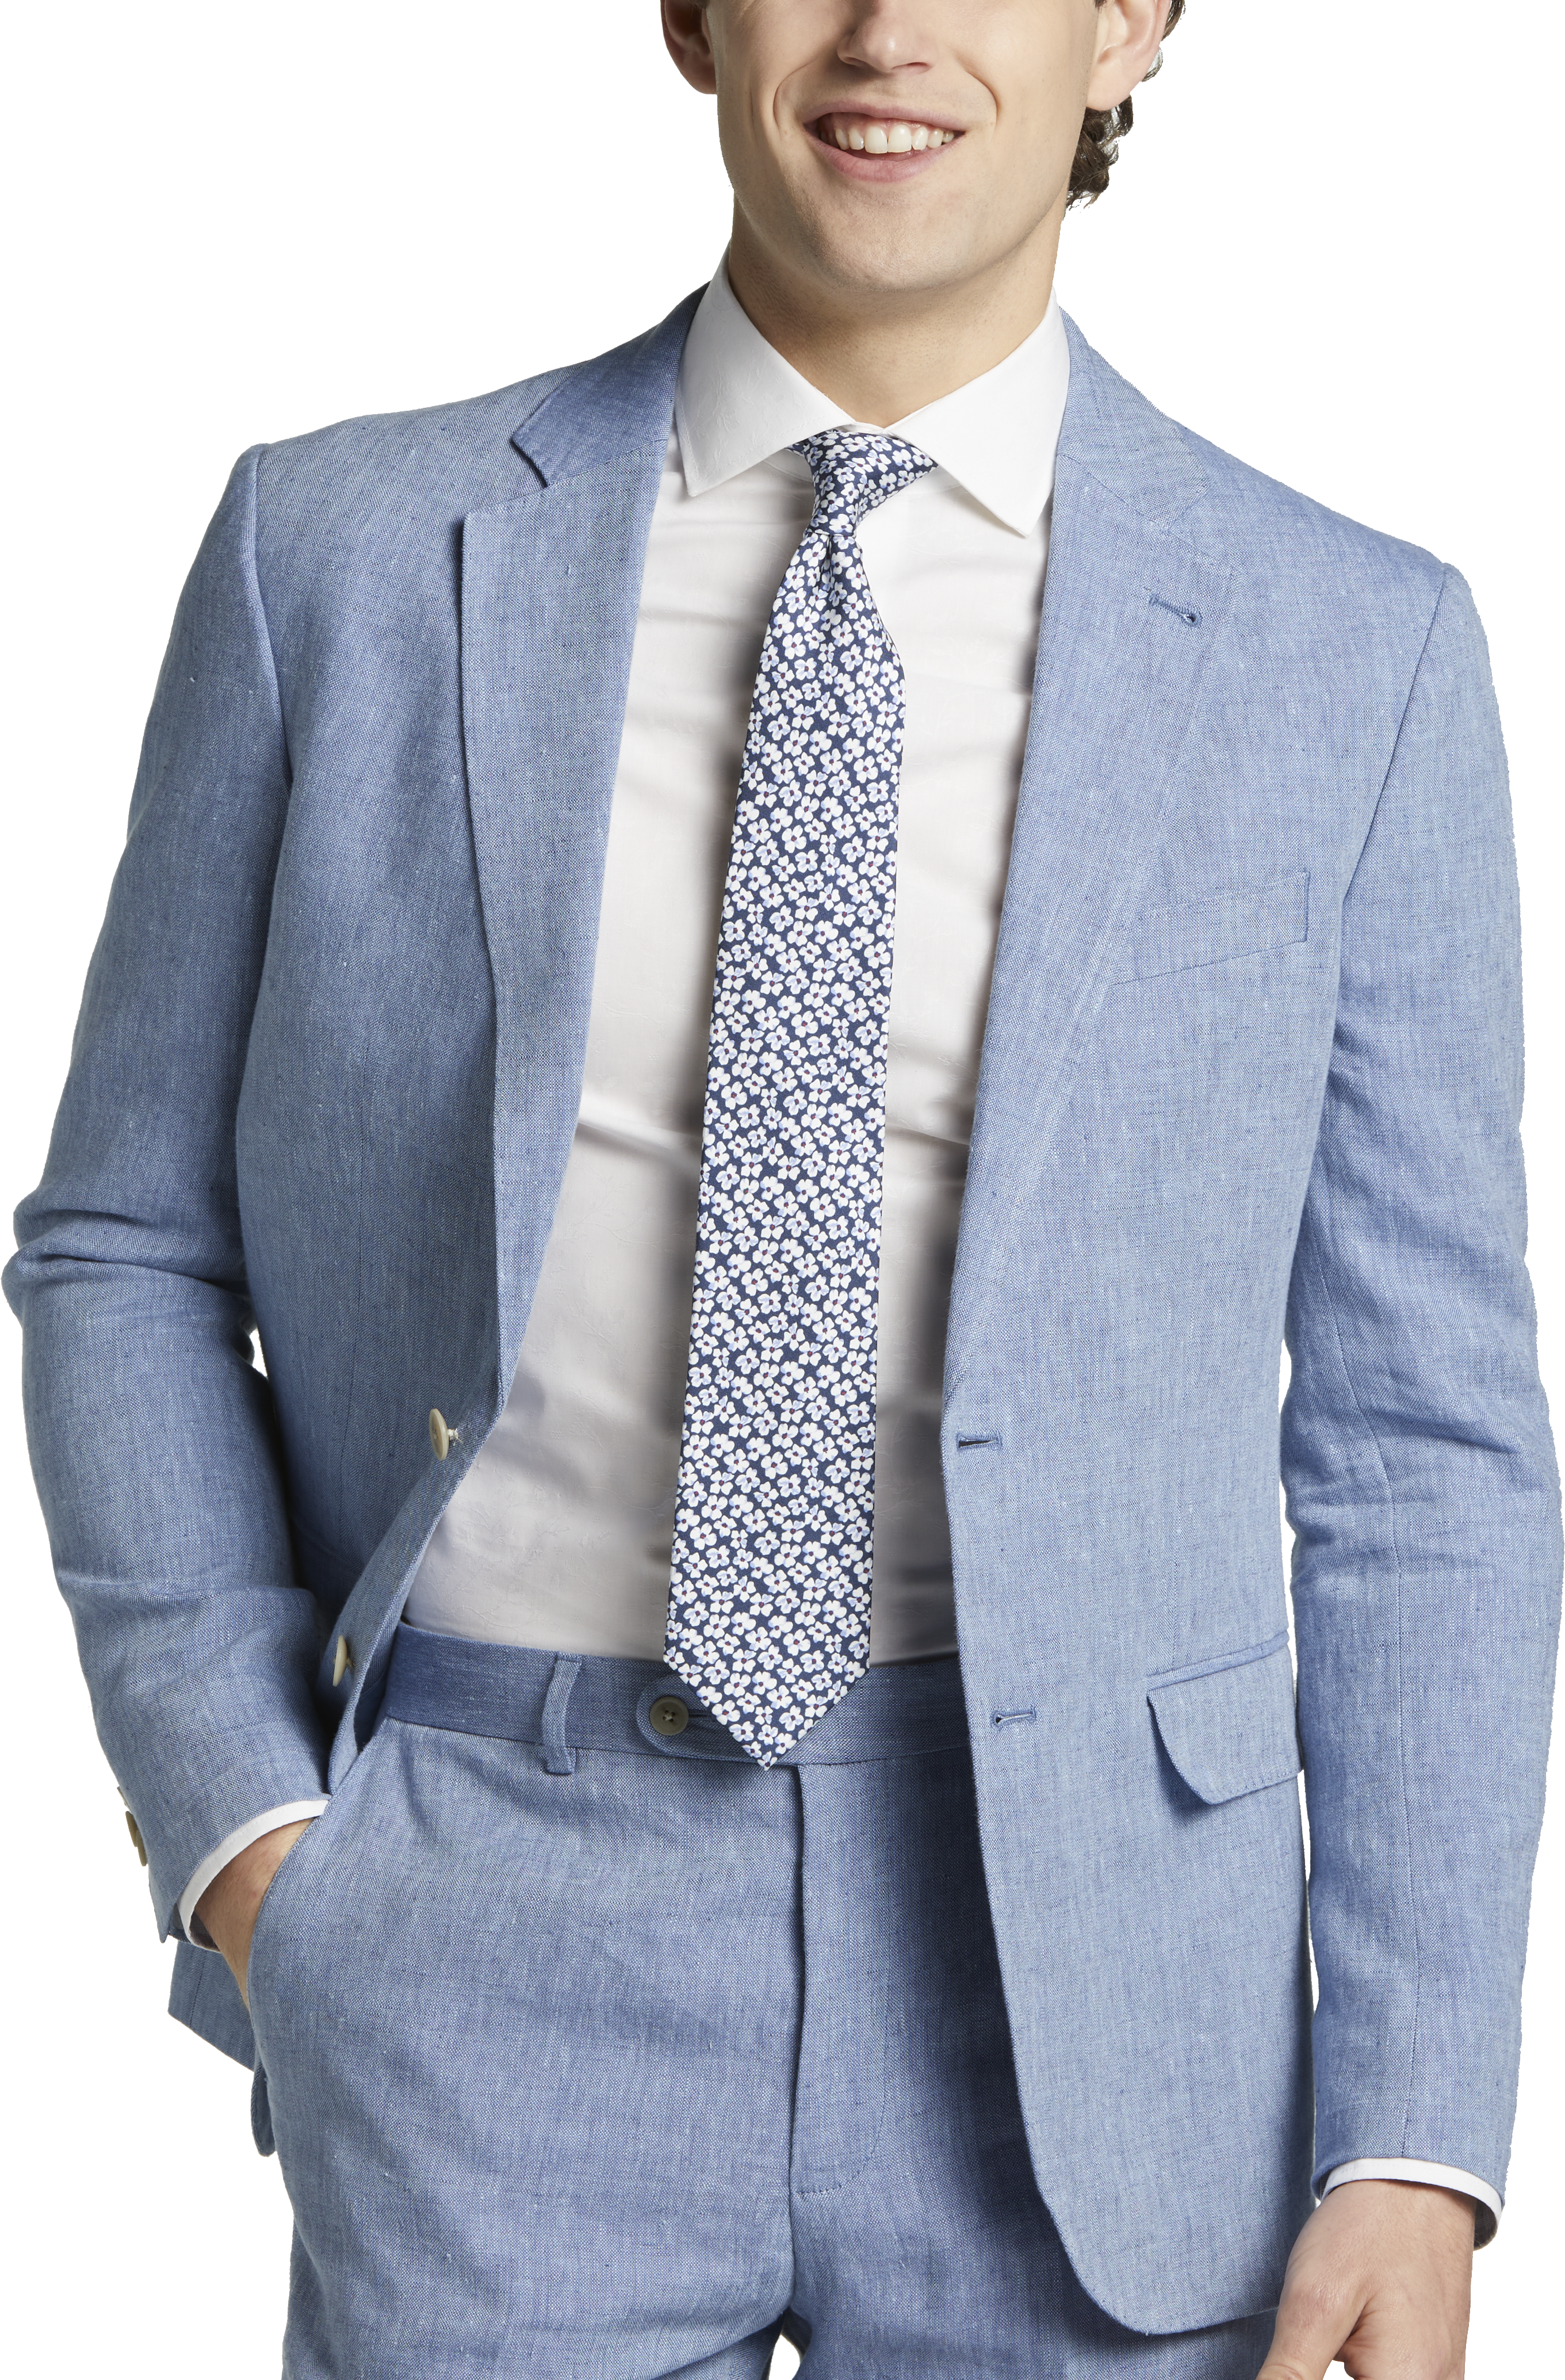 JOE Joseph Abboud Linen Slim Fit Suit Separates Jacket, Light Blue